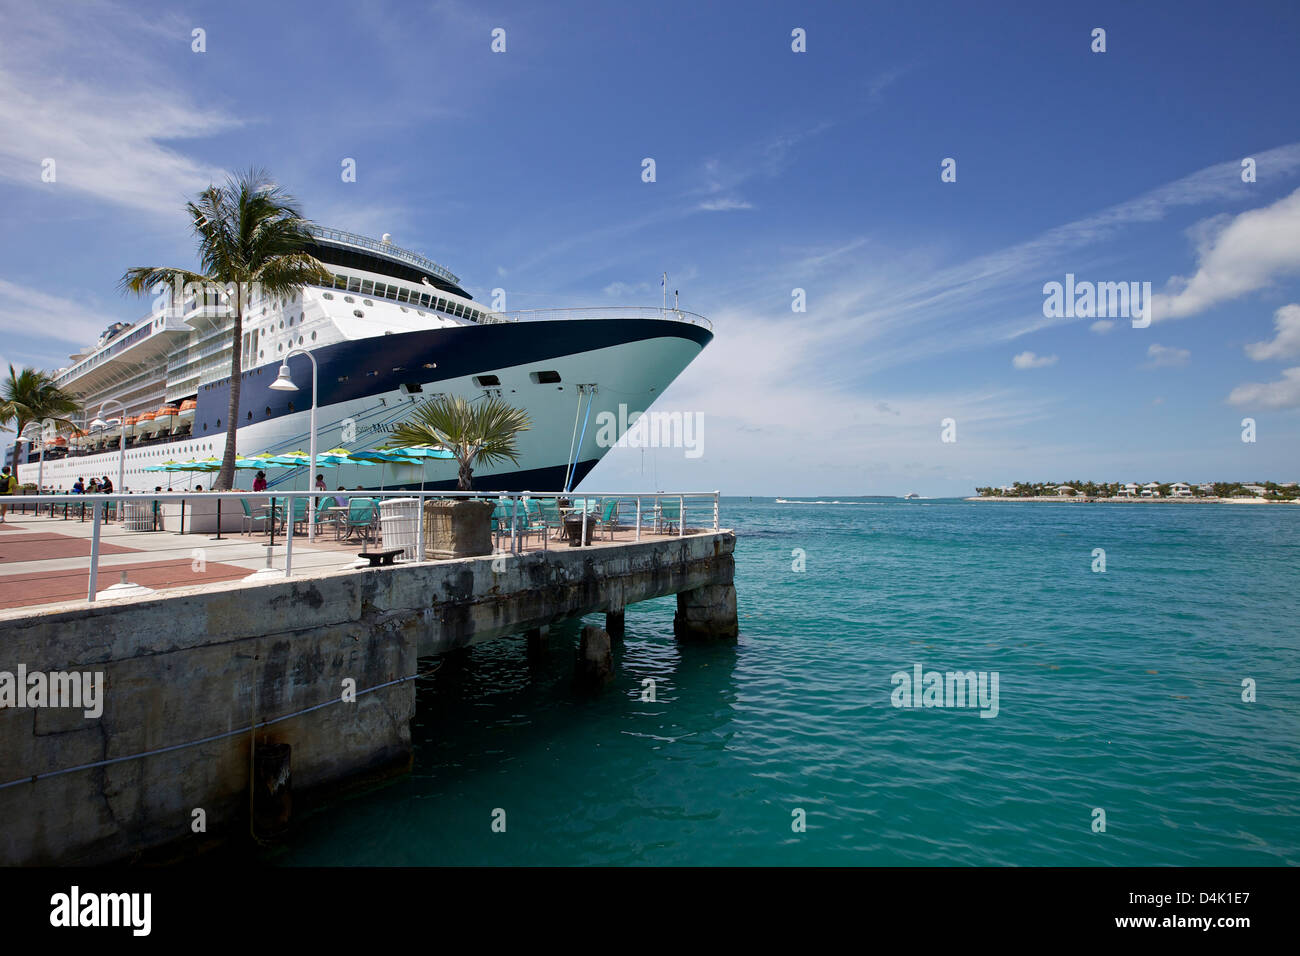 Bateau de croisière Celebrity Millennium amarré à Key West Banque D'Images